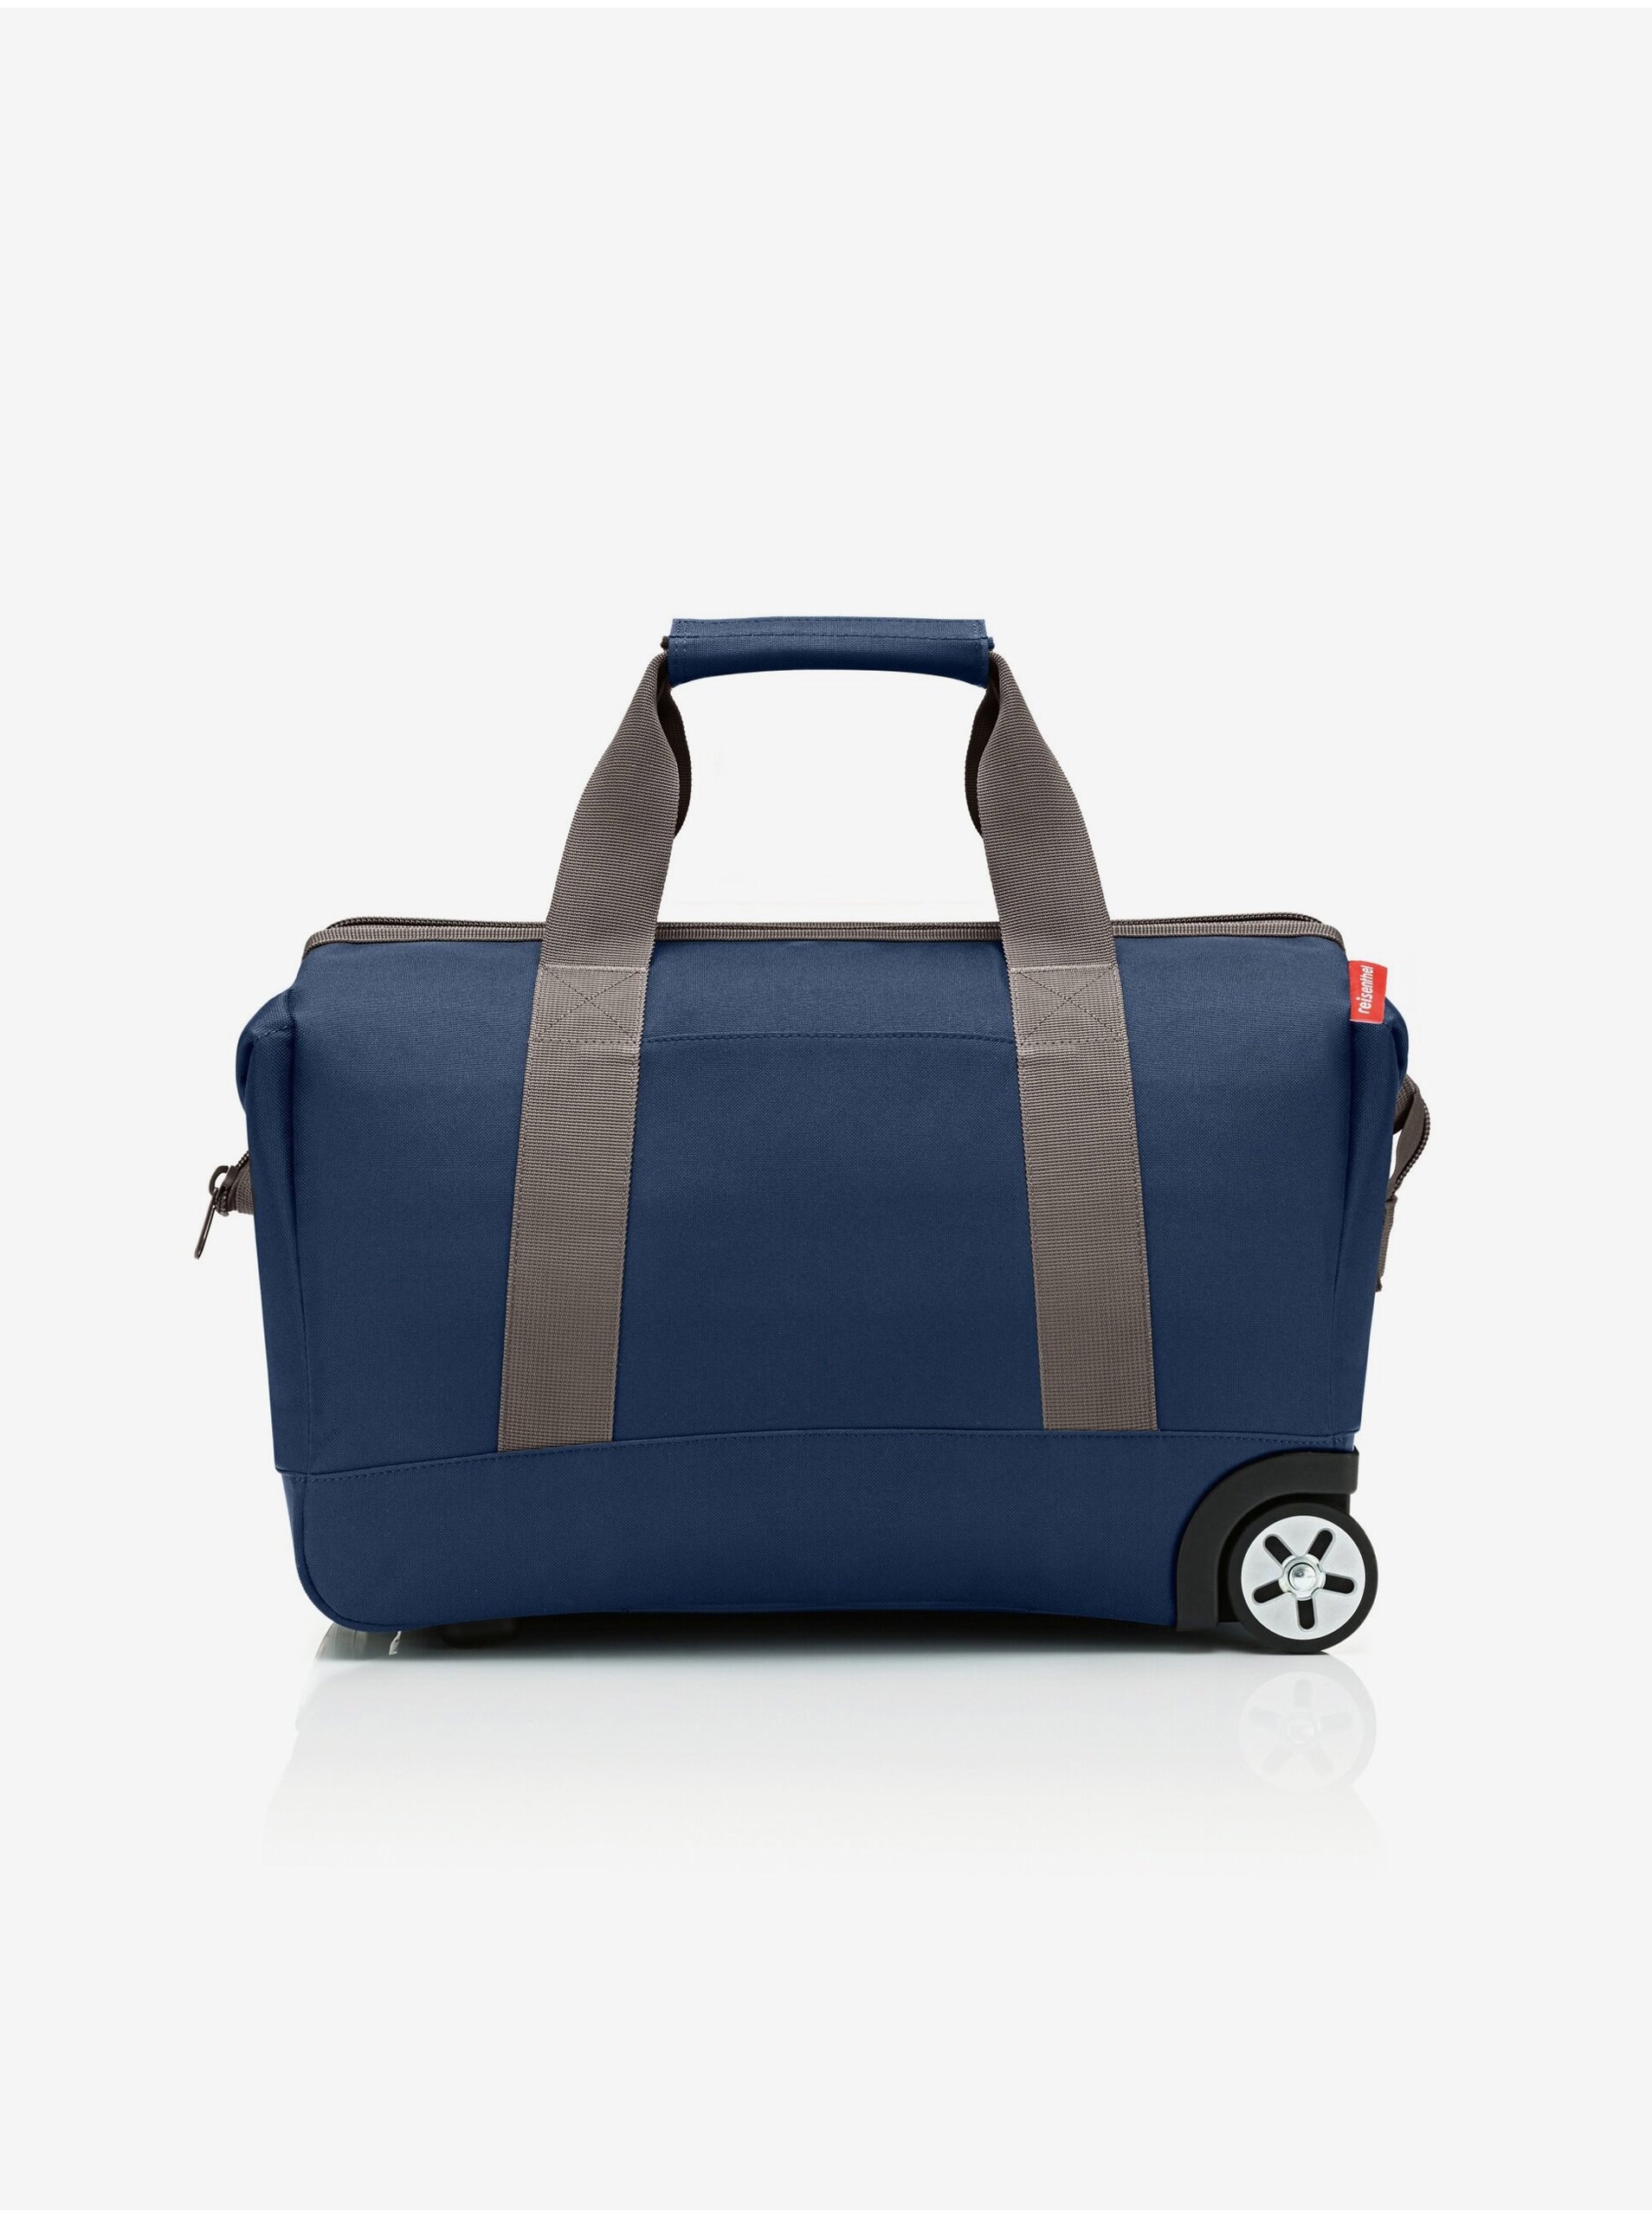 E-shop Tmavě modrá cestovní taška na kolečkách Reisenthel Allrounder Trolley